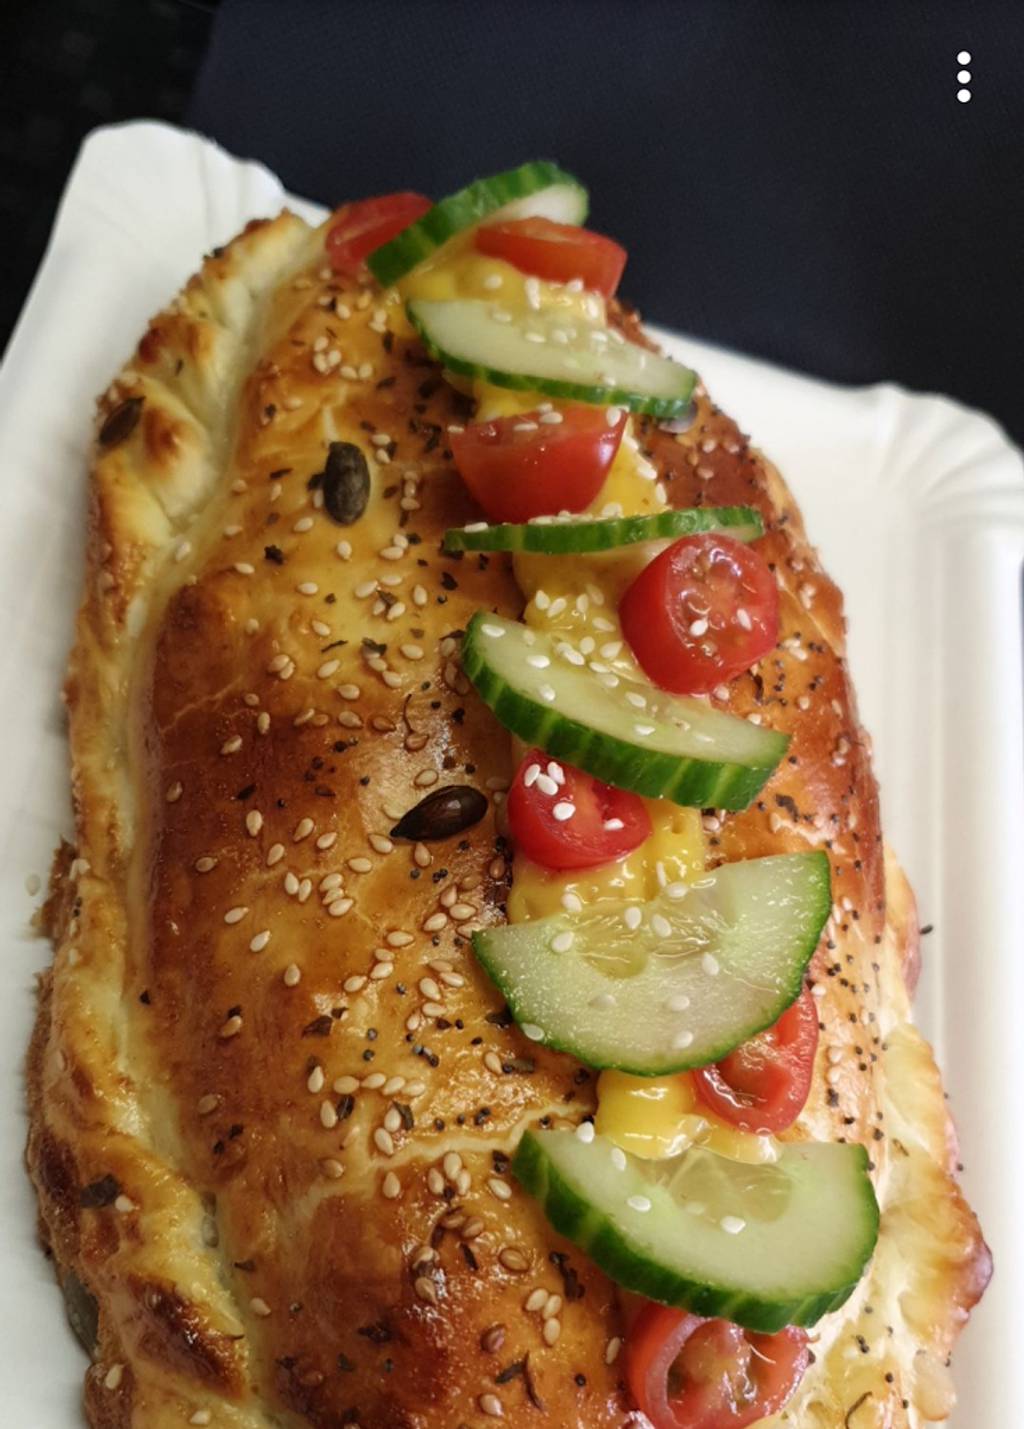 Restaurant Madame Tourtes Bagnolet - Food Hot dog bun Sandwich Ingredient Fast food